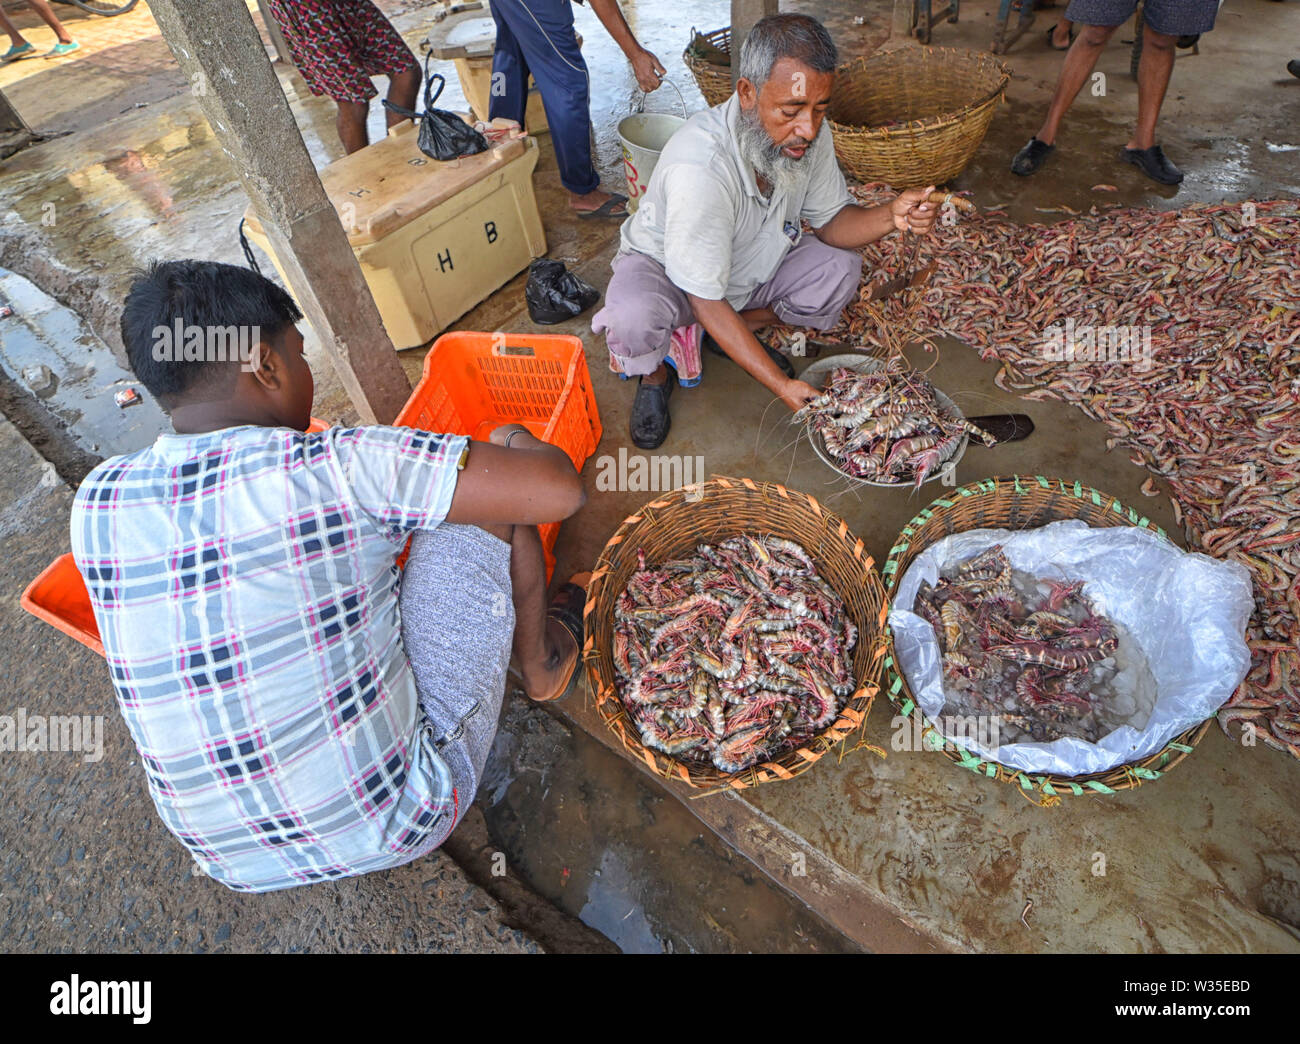 Digha, West Bengal, Indien. 12. Juli, 2019. Fischer besetzt Angeln sortieren bei die Fische Handelsplatz der Digha in der Nähe der Bucht von Bengalen. Wegen des Mangels an Regen, Versorgung mit Fisch ist sehr unregelmäßig und weniger Vergleichende als andere Jahre. Lokale Regierung beschränkt die Fangtätigkeiten so vor kurzem Insgesamt 31 Fischer fehlt in der Bucht von Bengalen wegen schlechten Wetters Credit gegangen sind: Avishek Das/SOPA Images/ZUMA Draht/Alamy leben Nachrichten Stockfoto